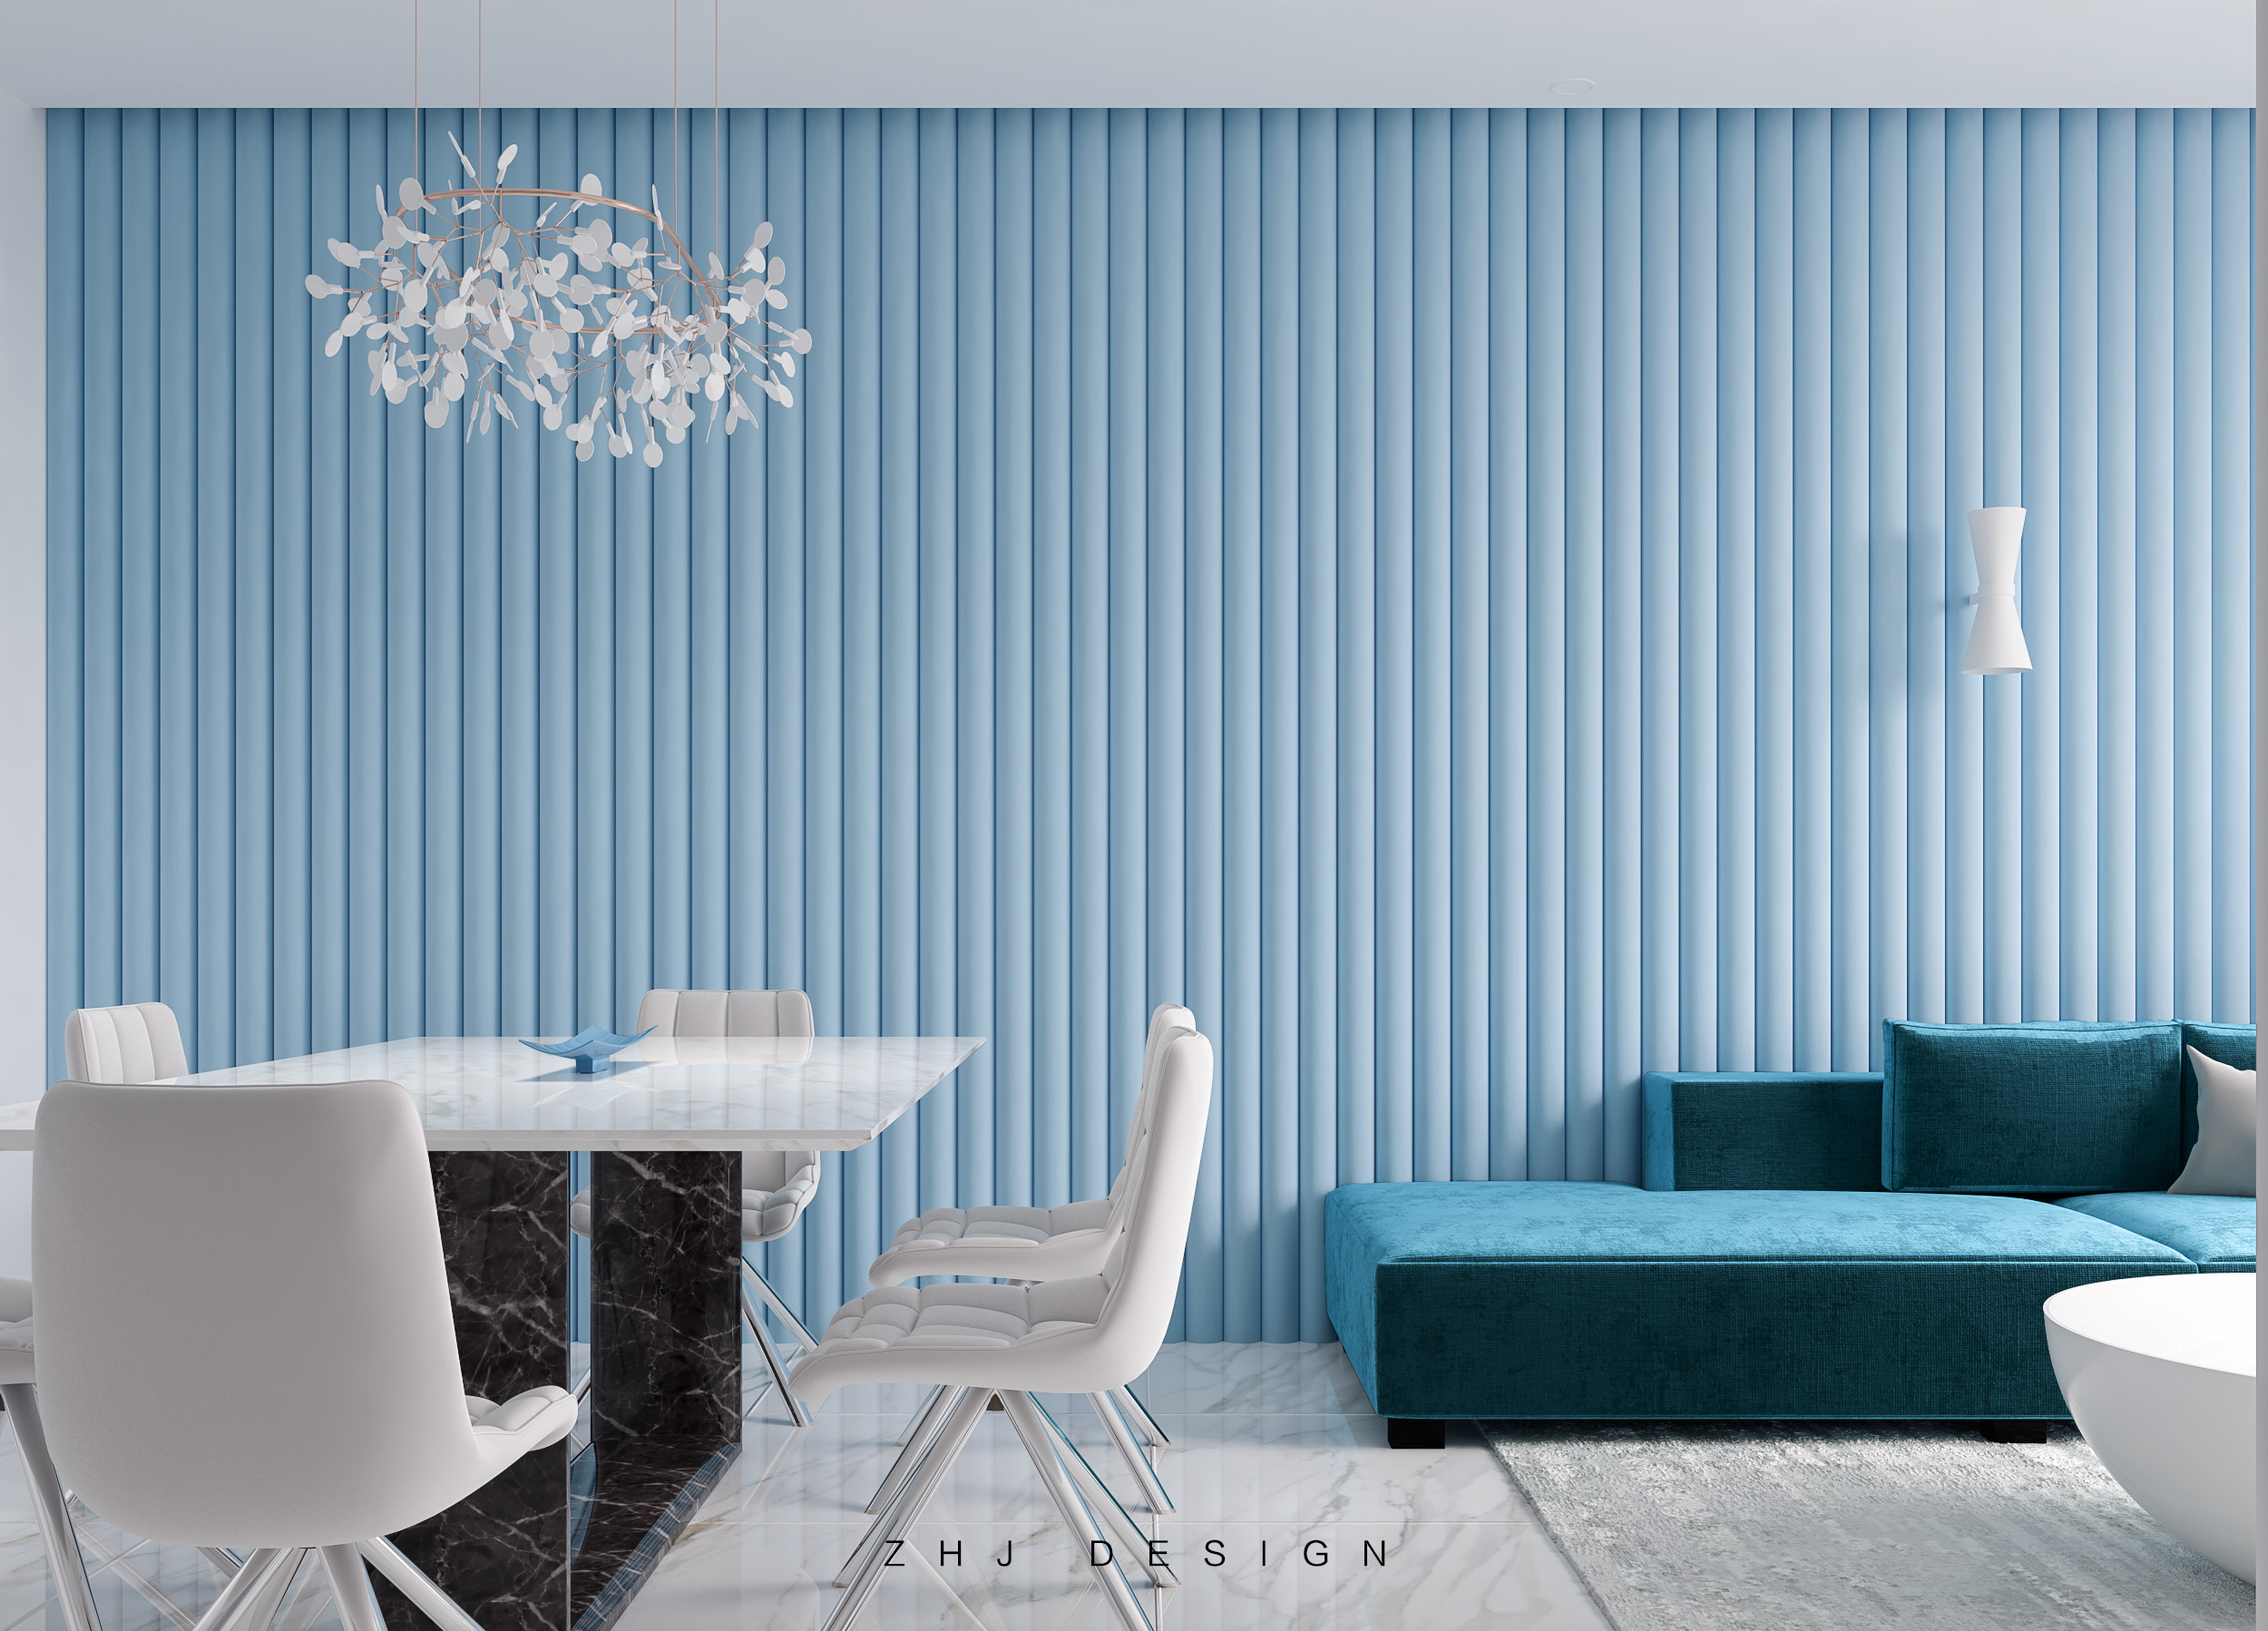 蓝色海洋 - 地中海风格三室两厅装修效果图 - 18328181562设计效果图 - 每平每屋·设计家